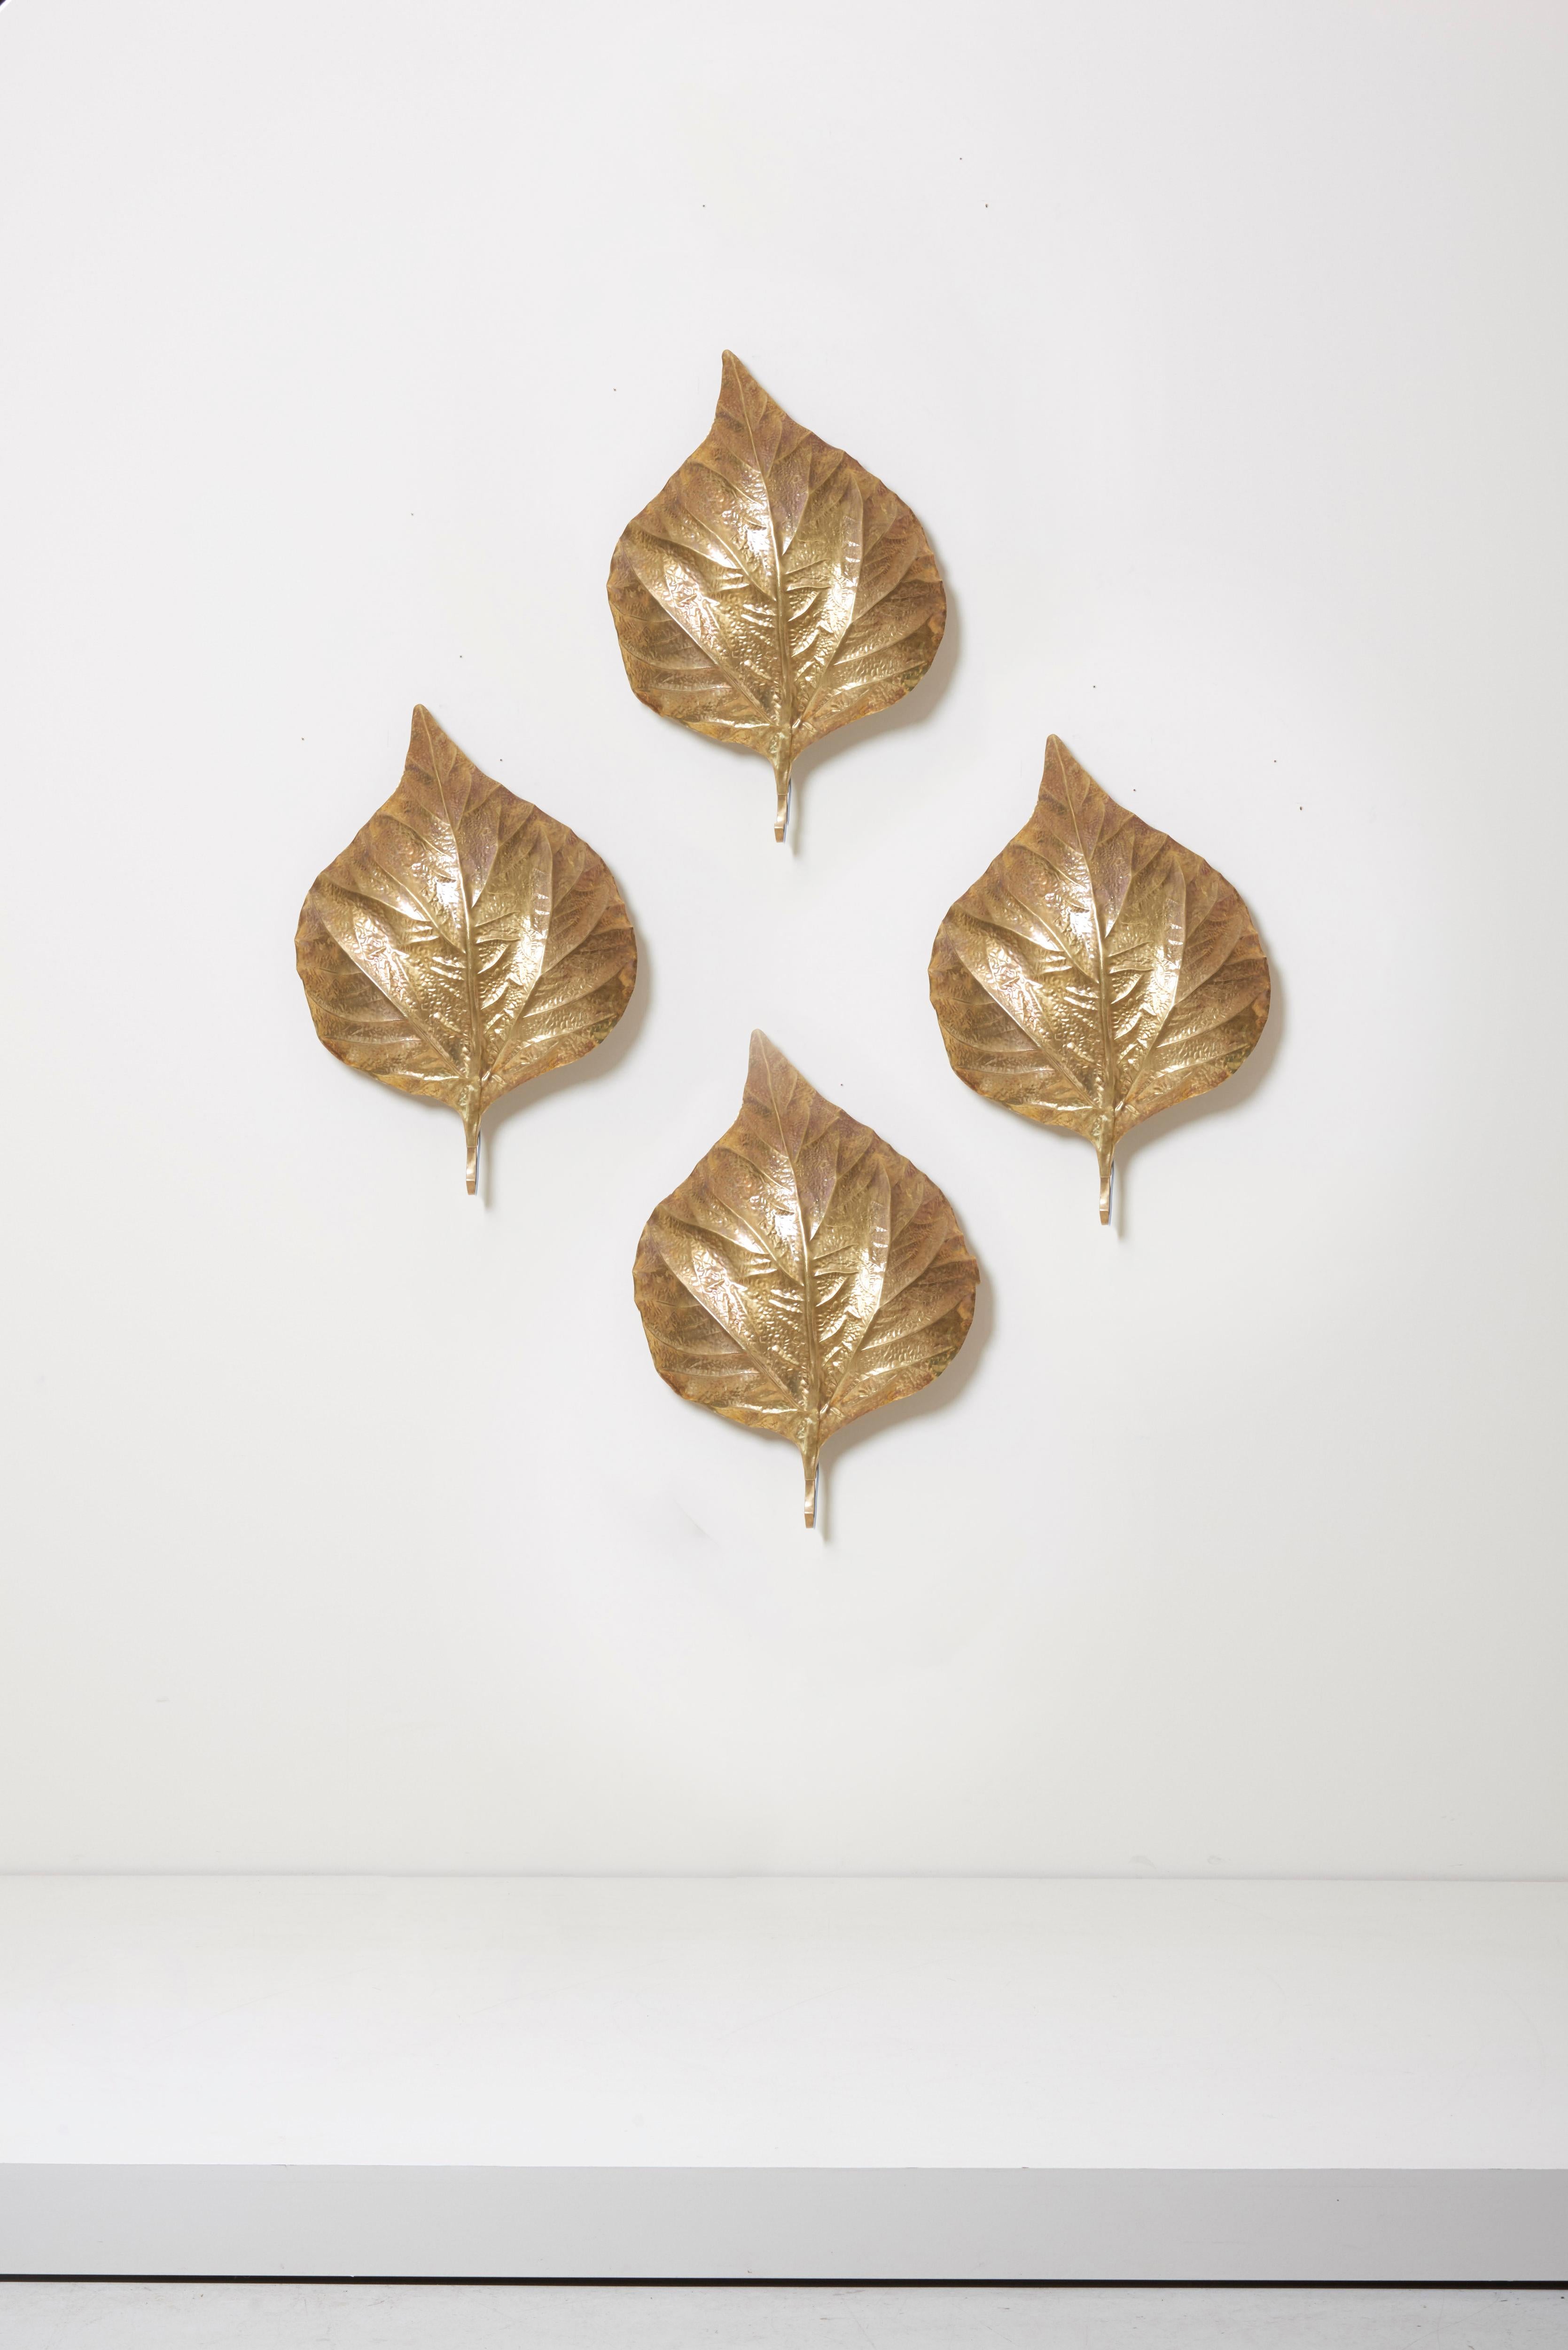 Vier wunderbare große Rhabarberblatt-Wandlampen des italienischen Designers Tommaso Barbi.
Die Lampen sind aus Messing gefertigt und die Reflexion des Lichts auf dem Messing bringt eine gemütliche Atmosphäre in jeden Raum.
Die Lampen sind Ikonen